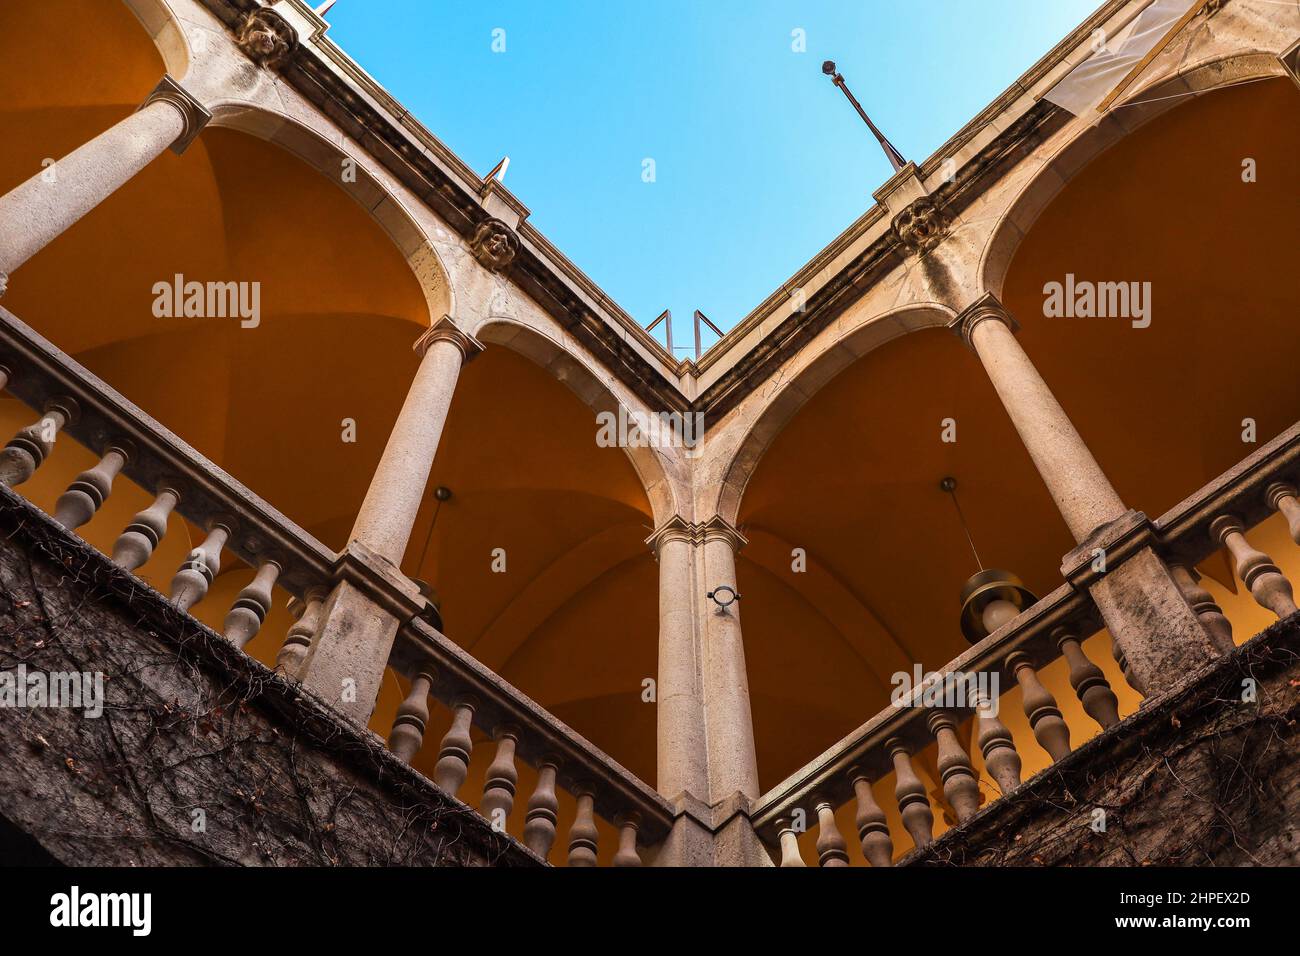 Guarda il balcone con colonne in Palau del Lloctinent con cielo blu a Barcellona. Architettura del Palazzo del Viceroy. Foto Stock